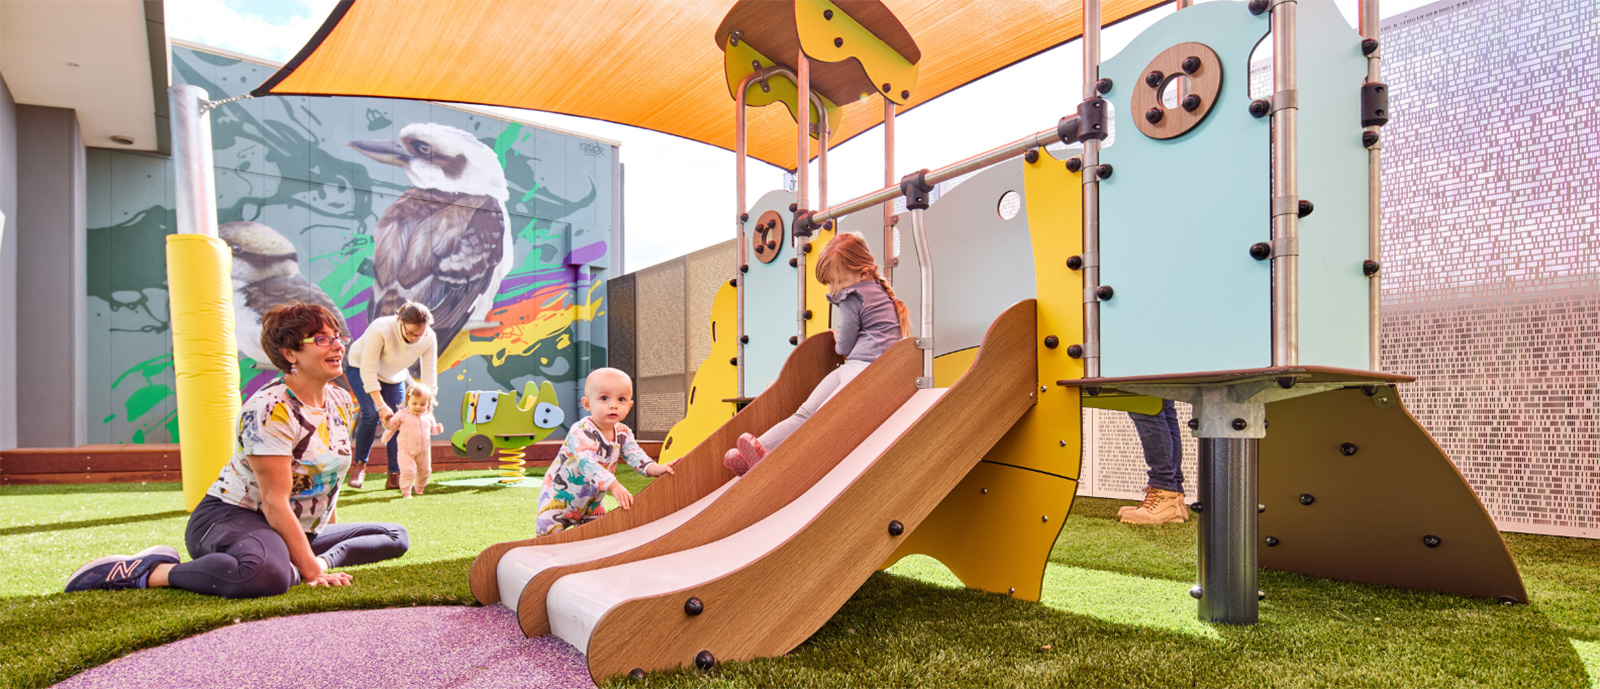 École Montessori : une aire de jeux propice à l'épanouissement